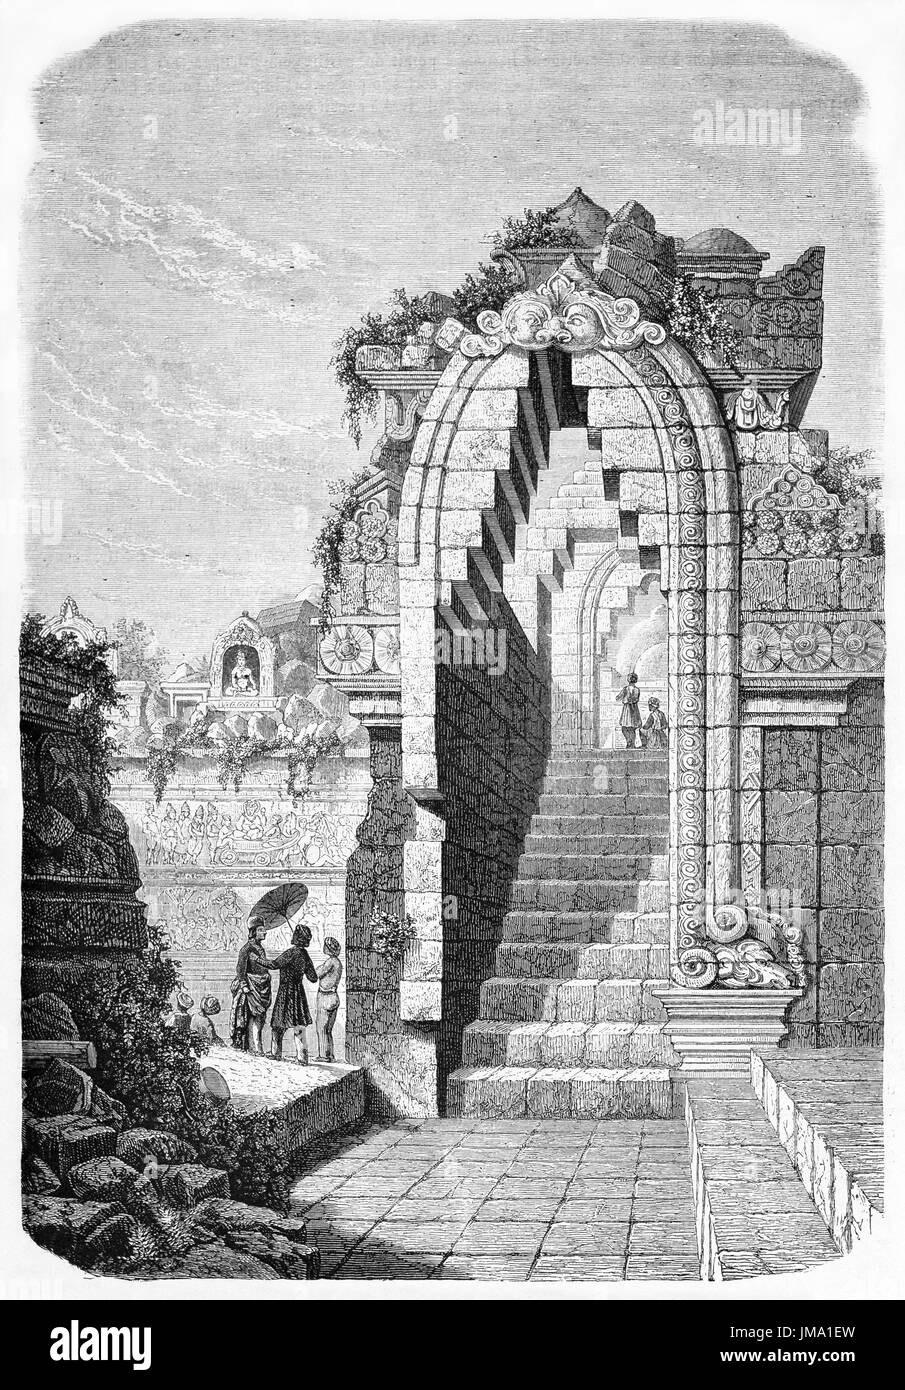 Alten Illustratio des Borobudur Tempel Portal, Zentraljava, Indonesien. Erstellt von De Bar und Trichon, veröffentlicht am Le Tour du Monde, Paris, 1861 Stockfoto